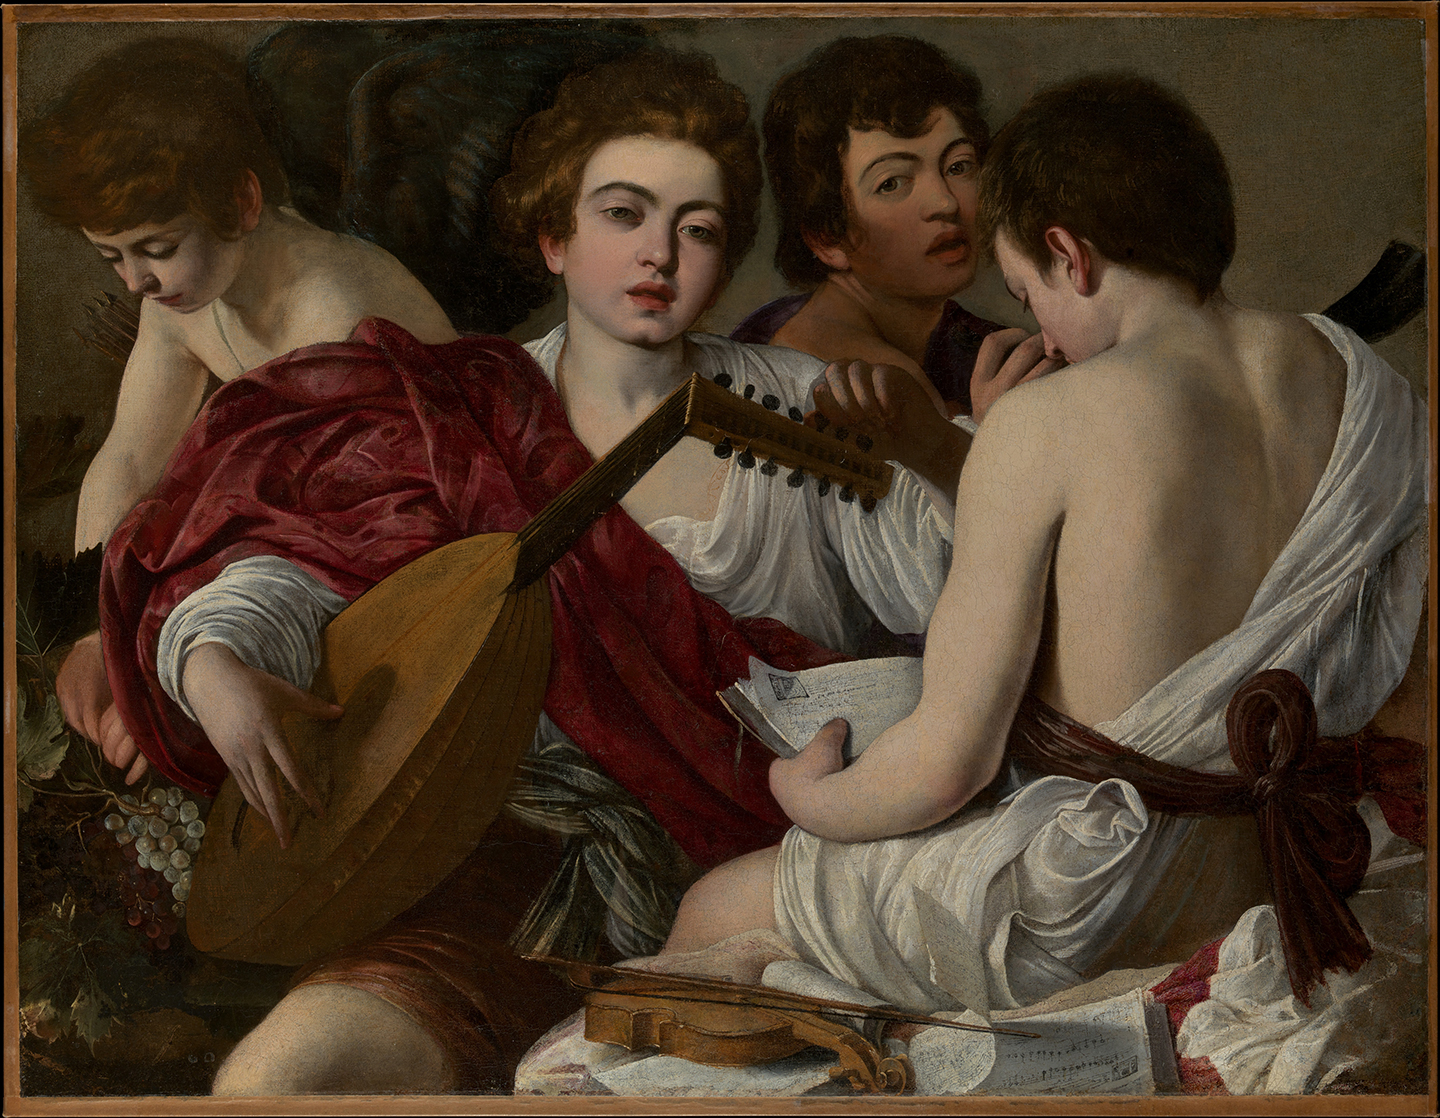 Tác phẩm “Những người nhạc công” của danh họa Caravaggio, năm 1597. Tranh sơn dầu trên vải canvas. Viện Bảo tàng Nghệ thuật Metropolitan, thành phố New York. (Ảnh: Tài sản công)